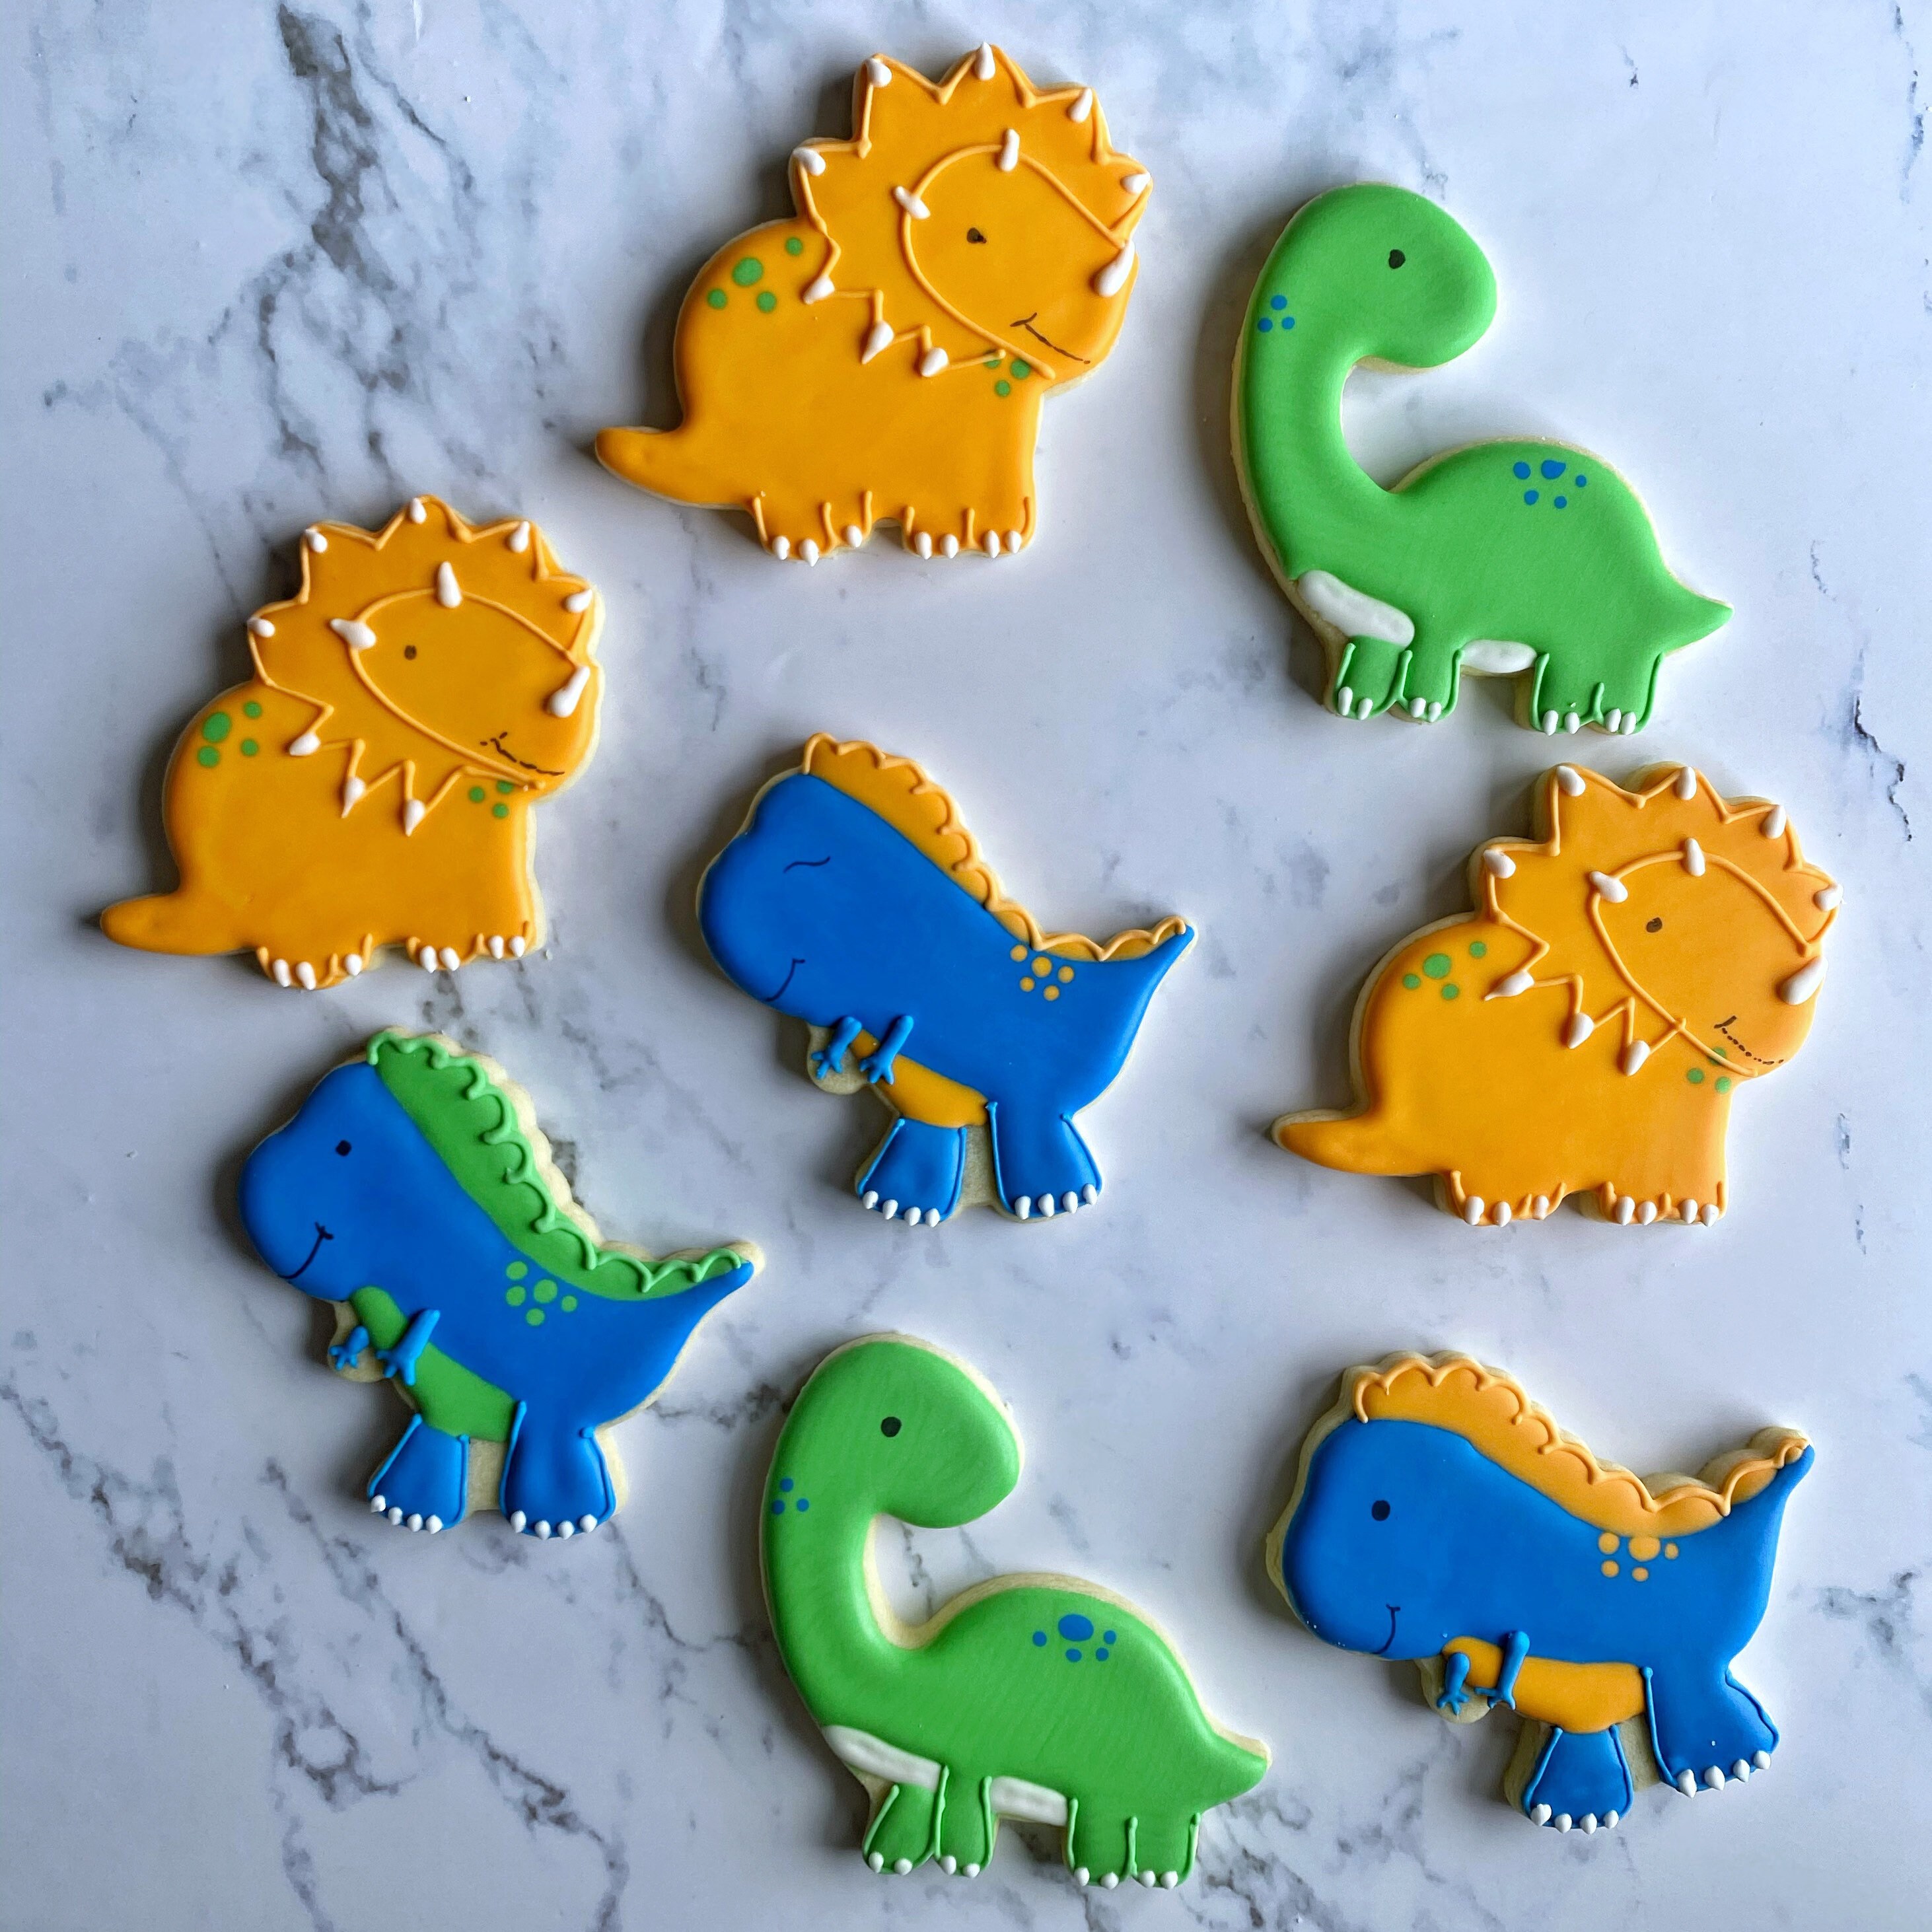 Dino Cookie Decorating Kit